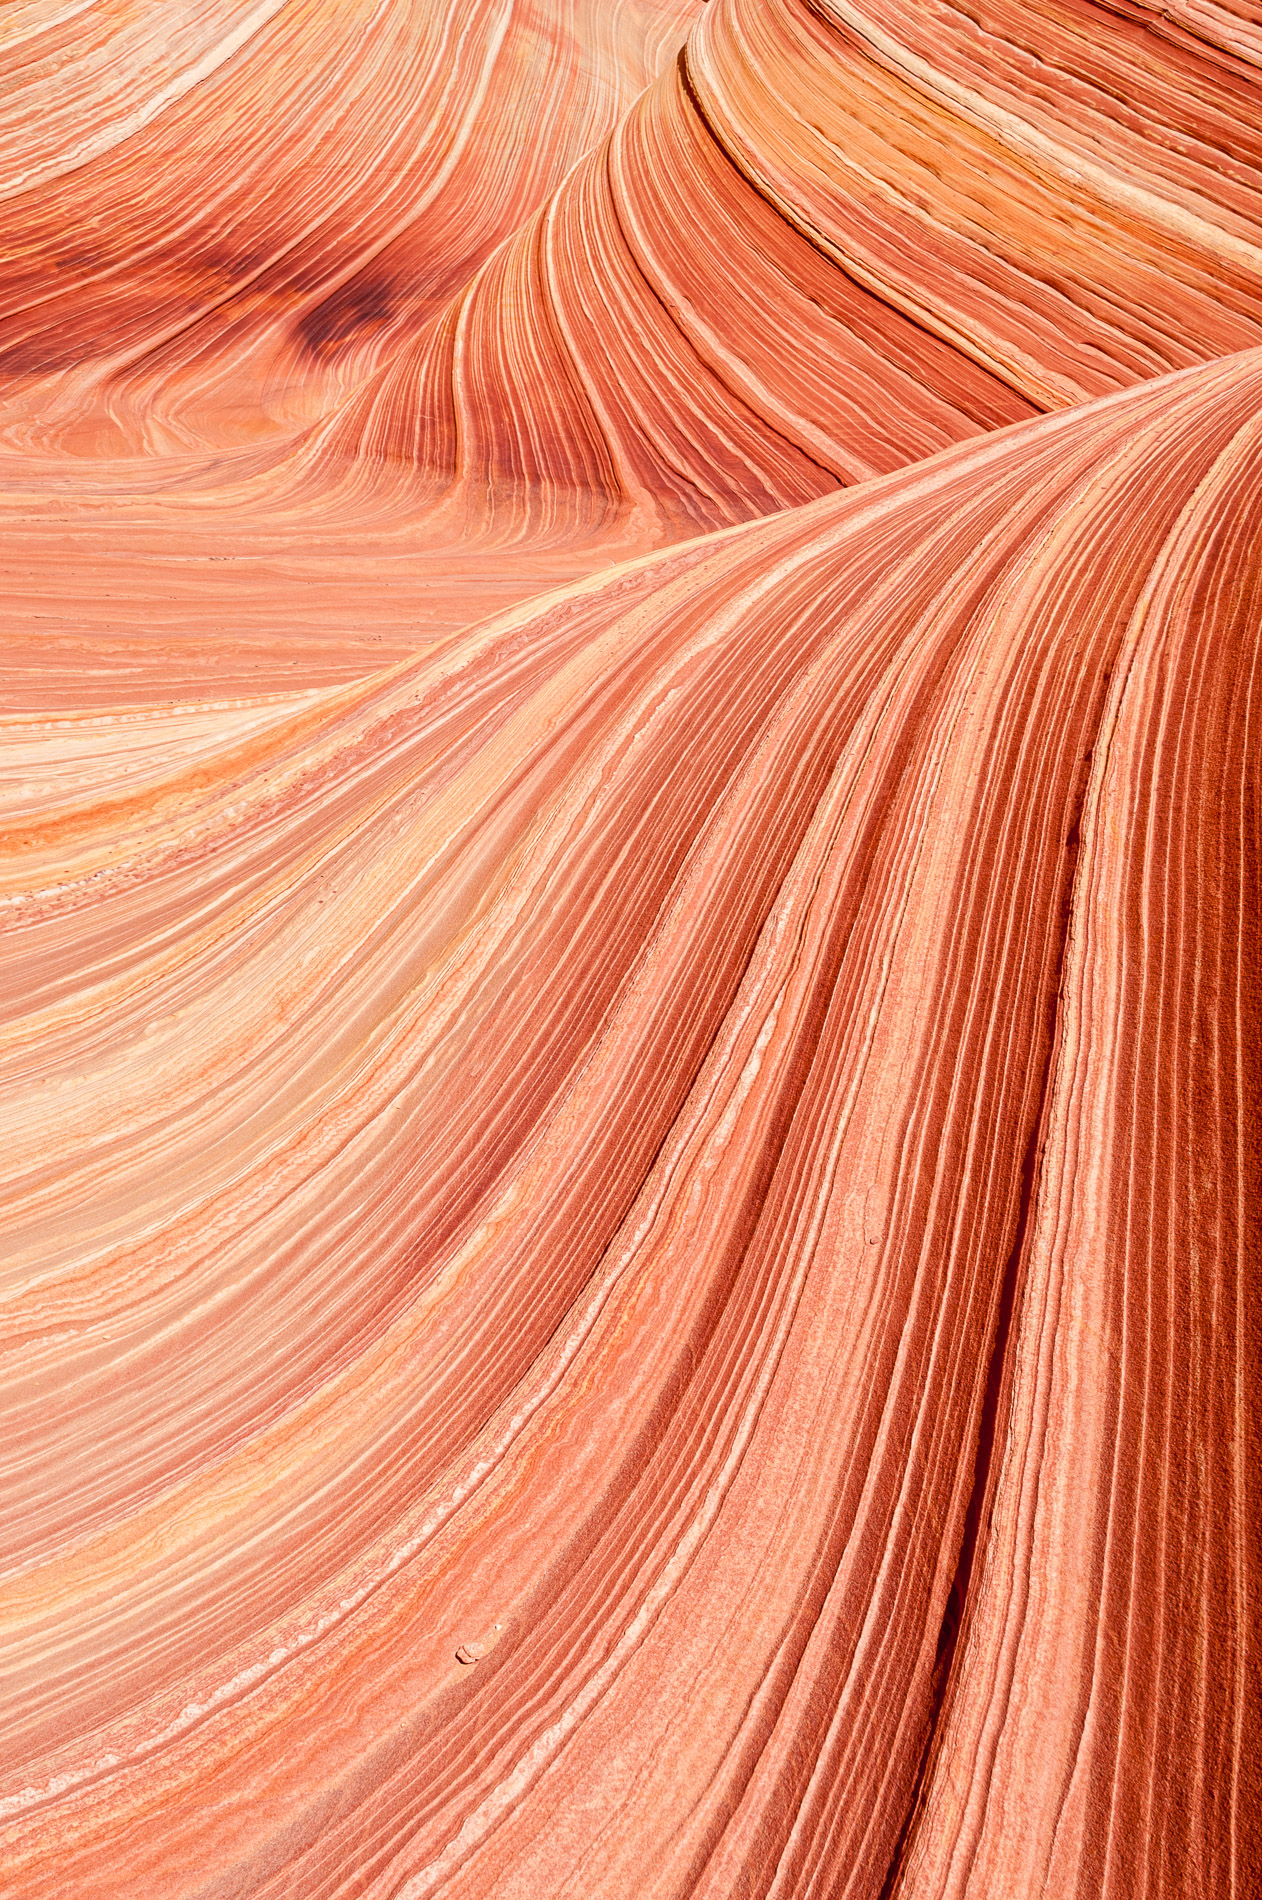 Paysages de Coyote Buttes, The Wave, Vermillion Cliffs National Monument, Arizona. Etats-Unis.